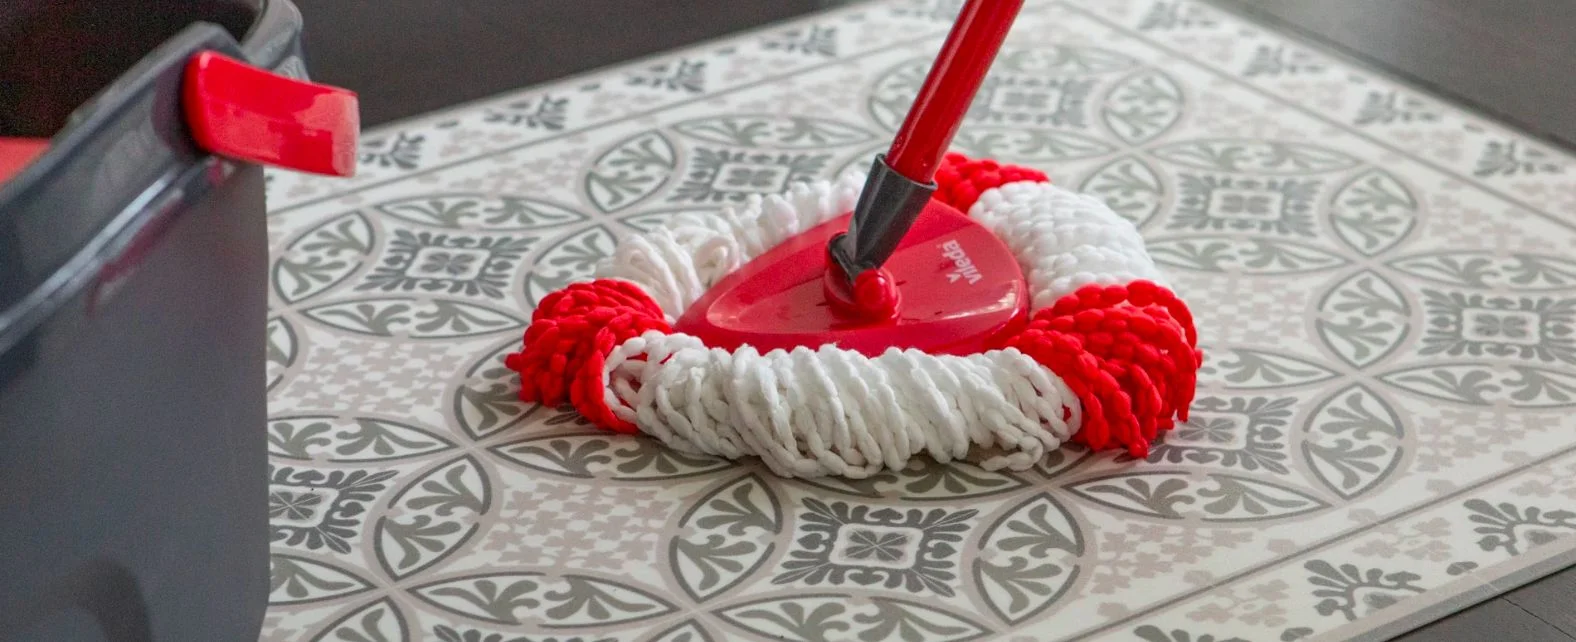 Nettoyage d'un tapis en vinyle avec une serpilliere